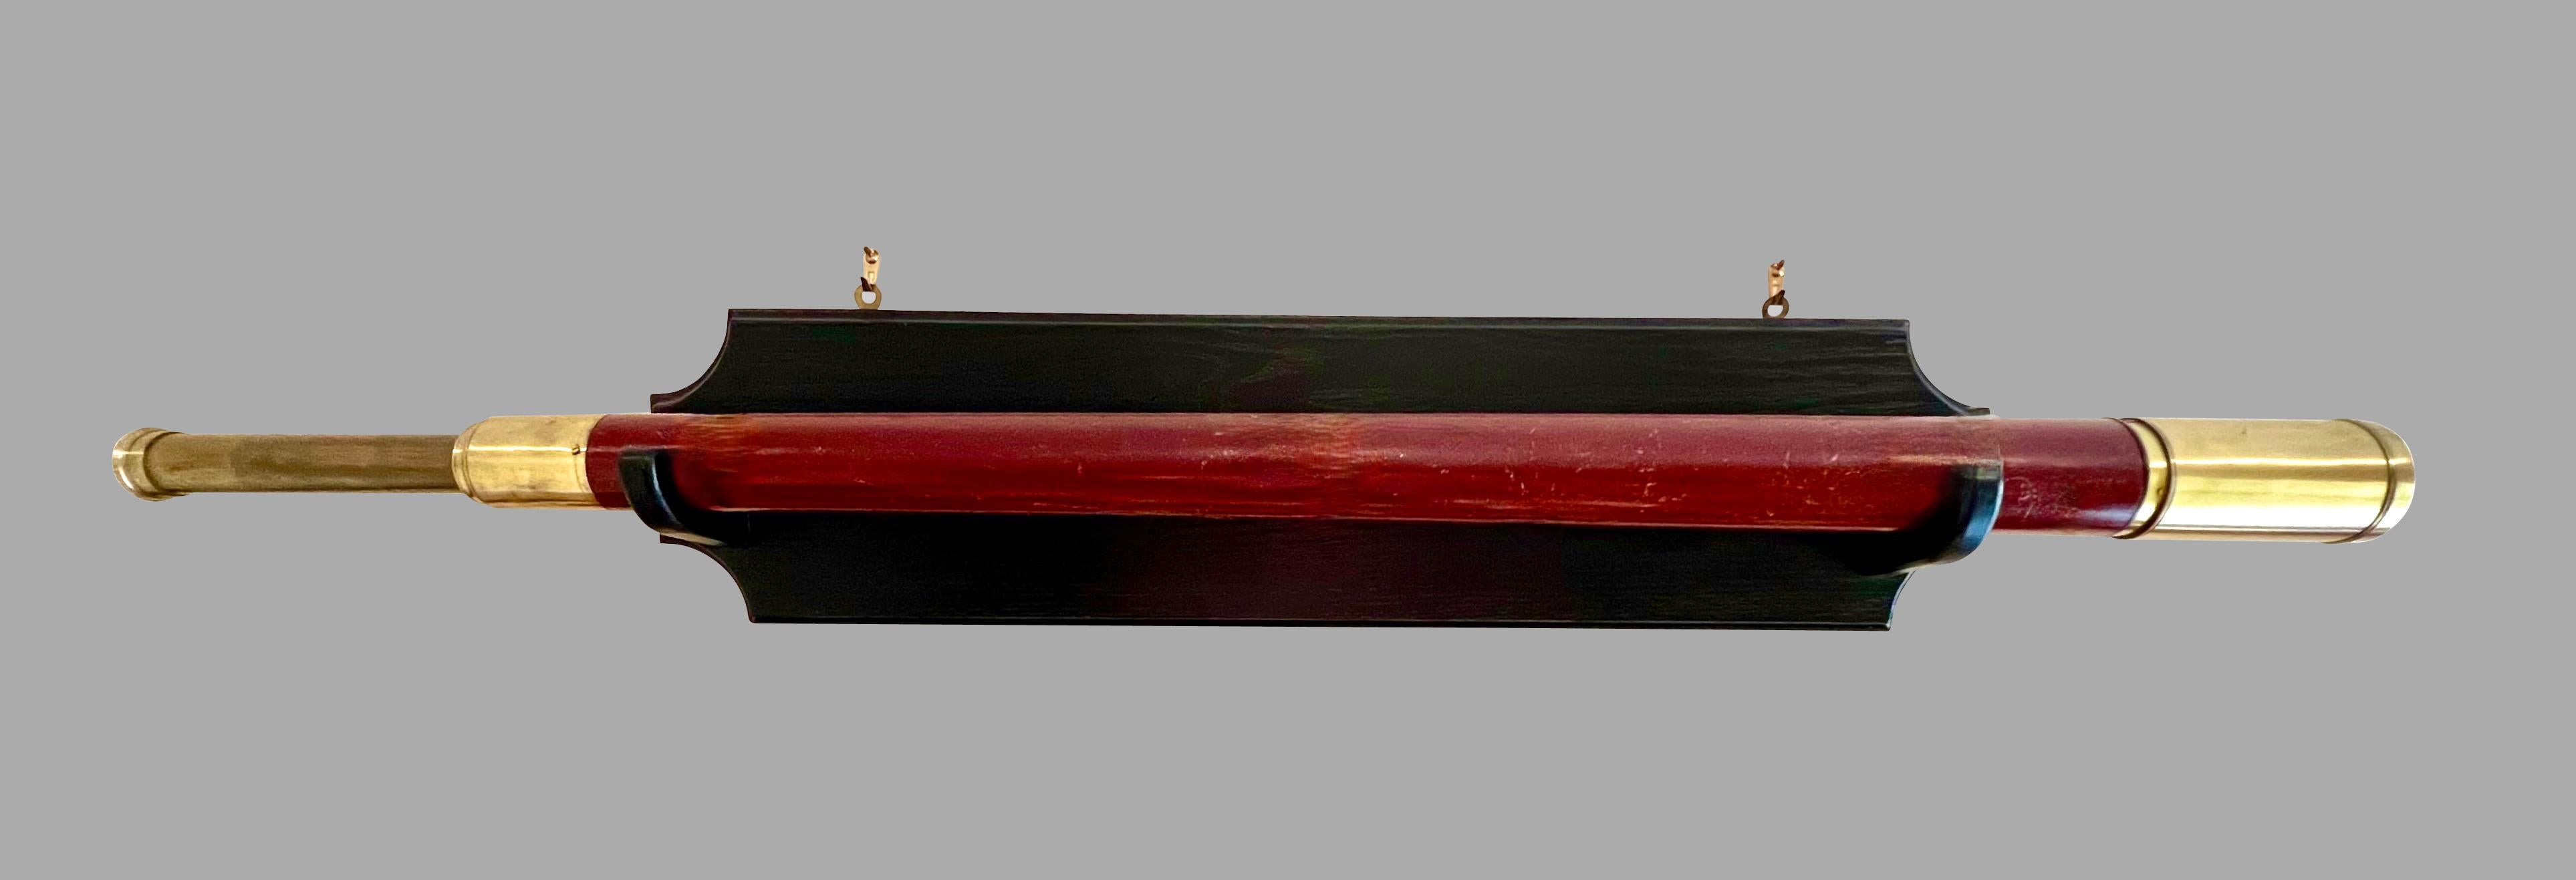 Télescope à tirage unique en acajou et en laiton, fabriqué et signé par William Bruce, Kings Head Court Shoe Lane London, vers 1830. Ce bel instrument est en bon état de fonctionnement et est désormais exposé sur une table de travail personnalisée. 